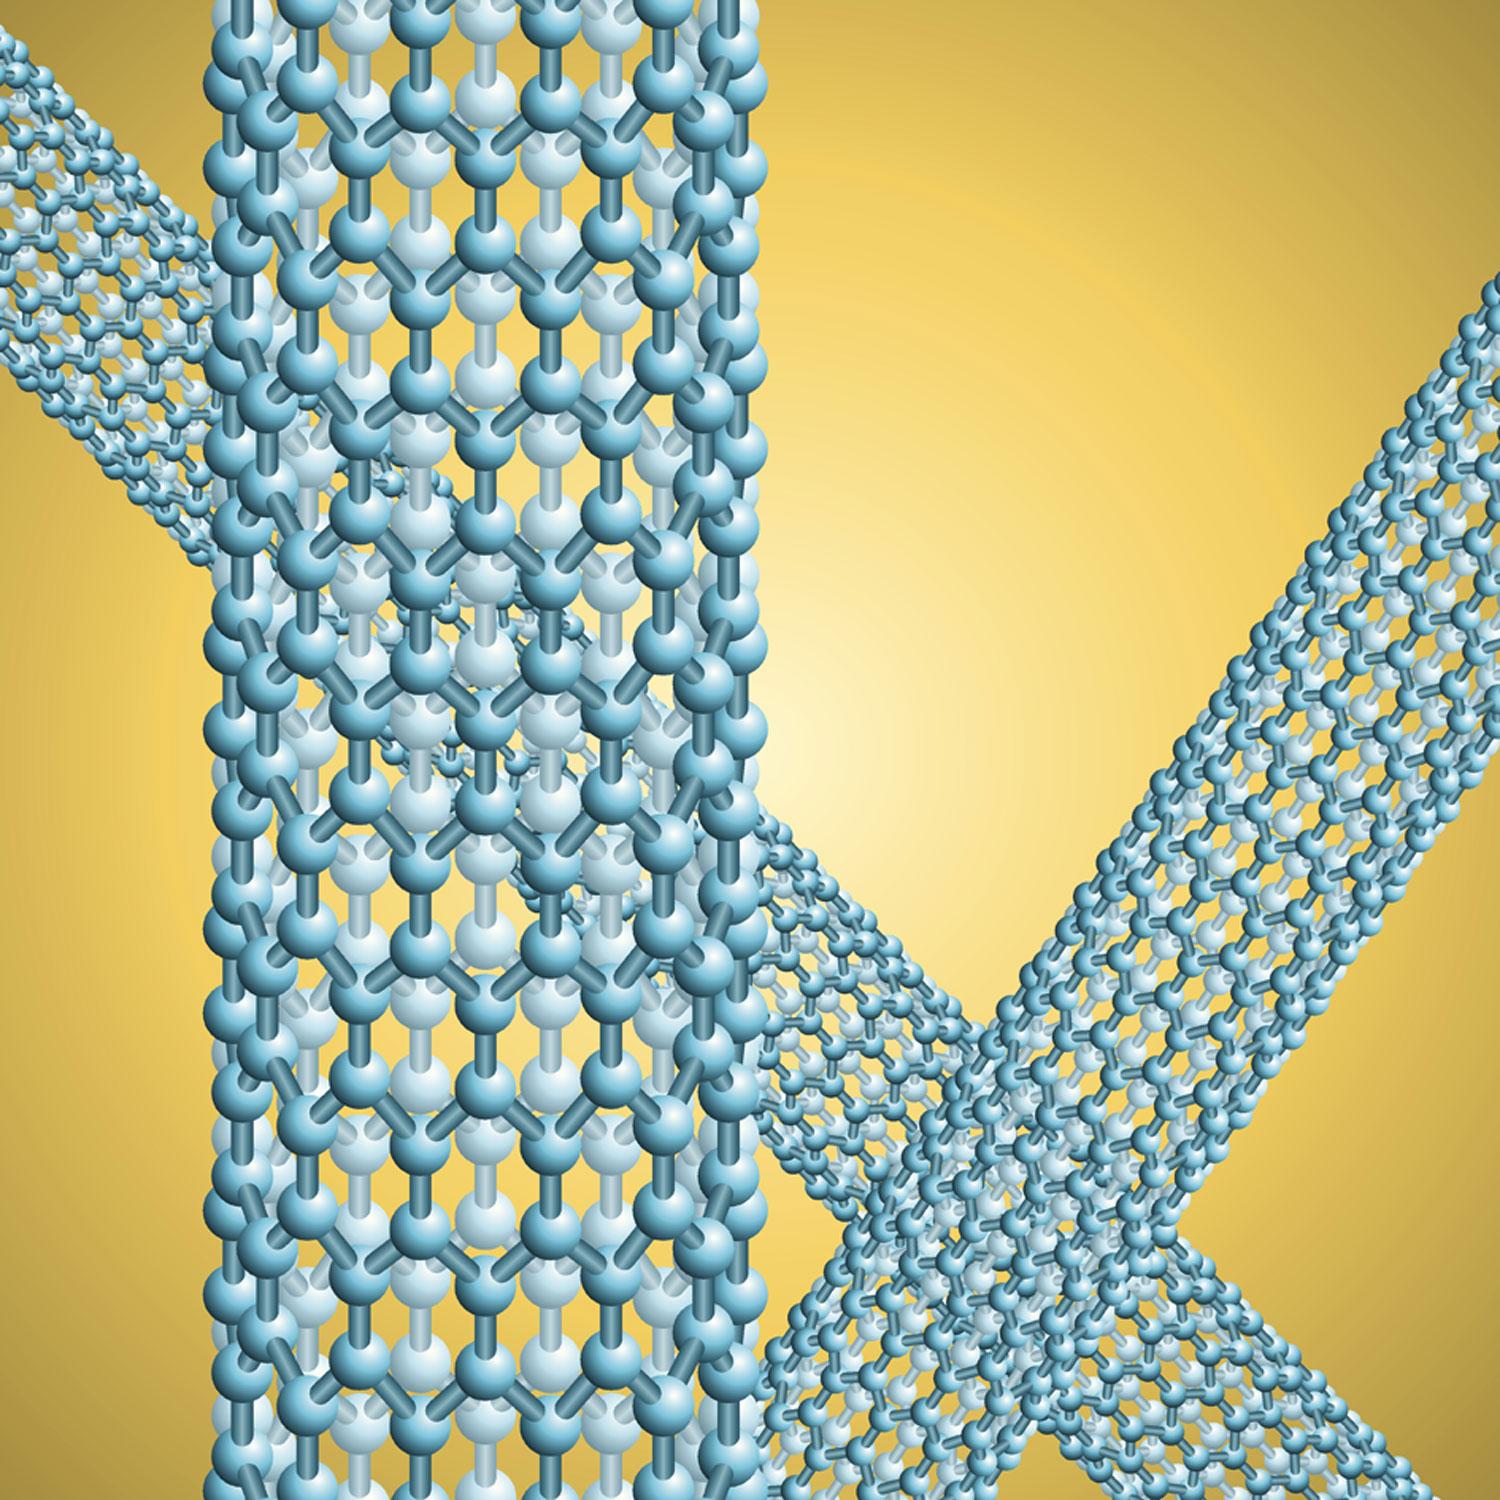 Szén nanocsövek - az új ígéret